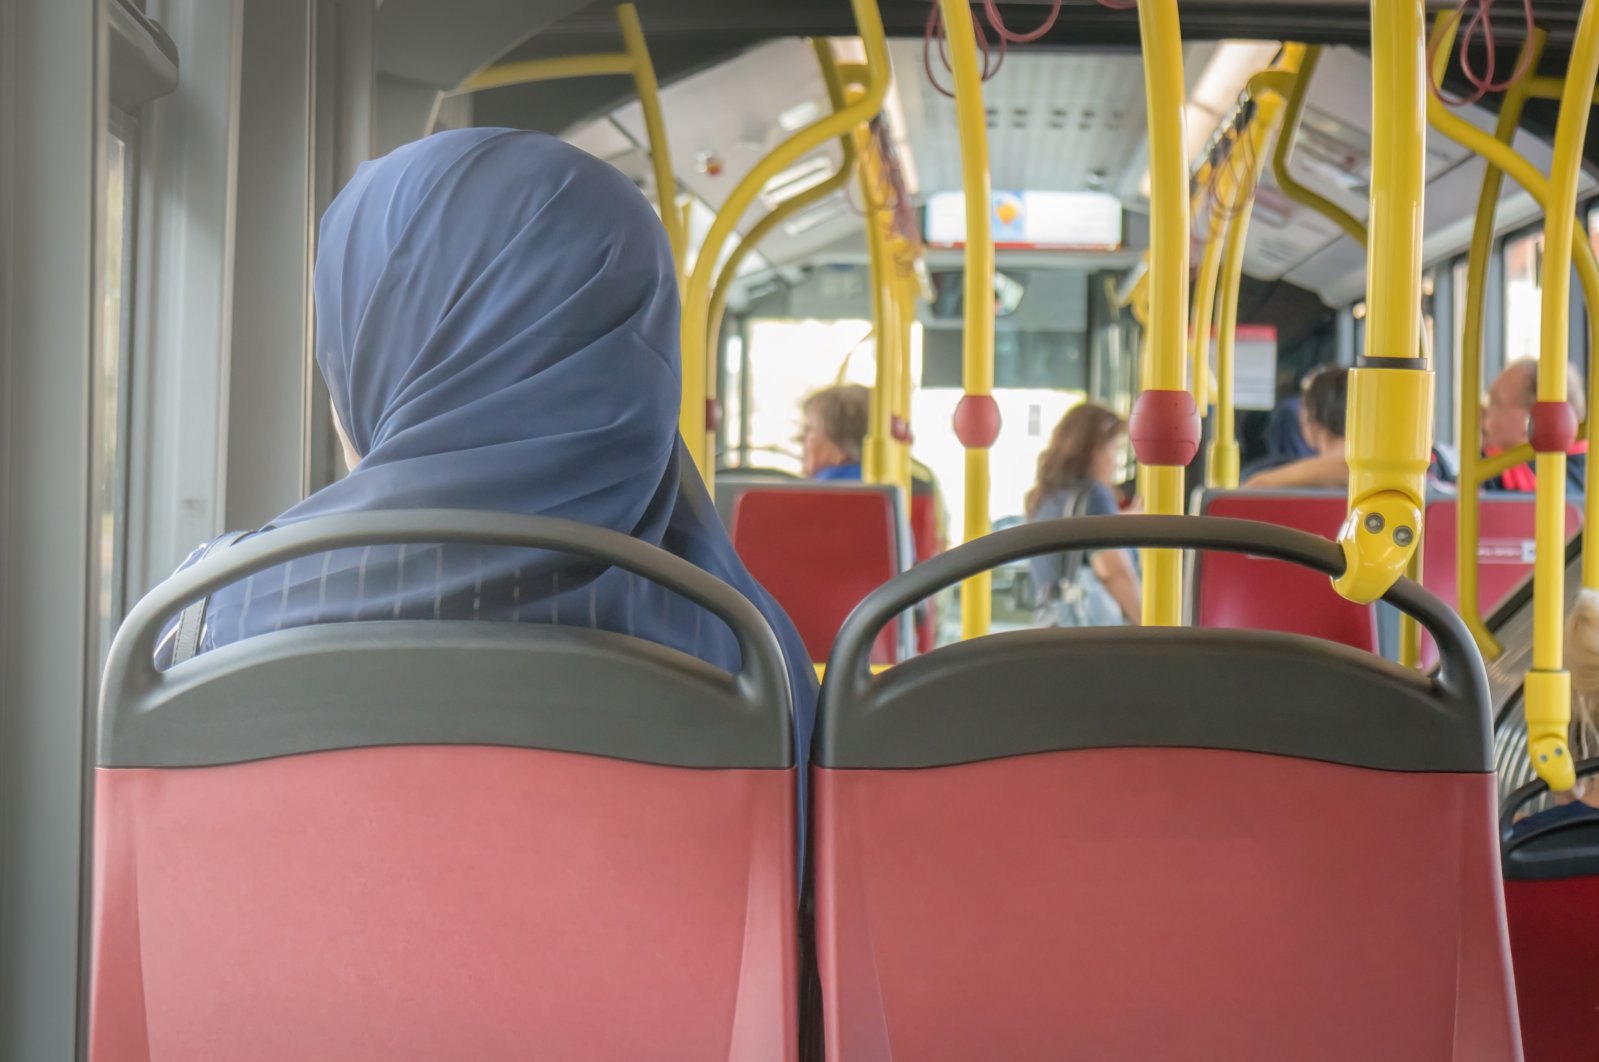 Wanita berjilbab di Austria menghadapi lebih banyak kebencian anti-Muslim daripada pria